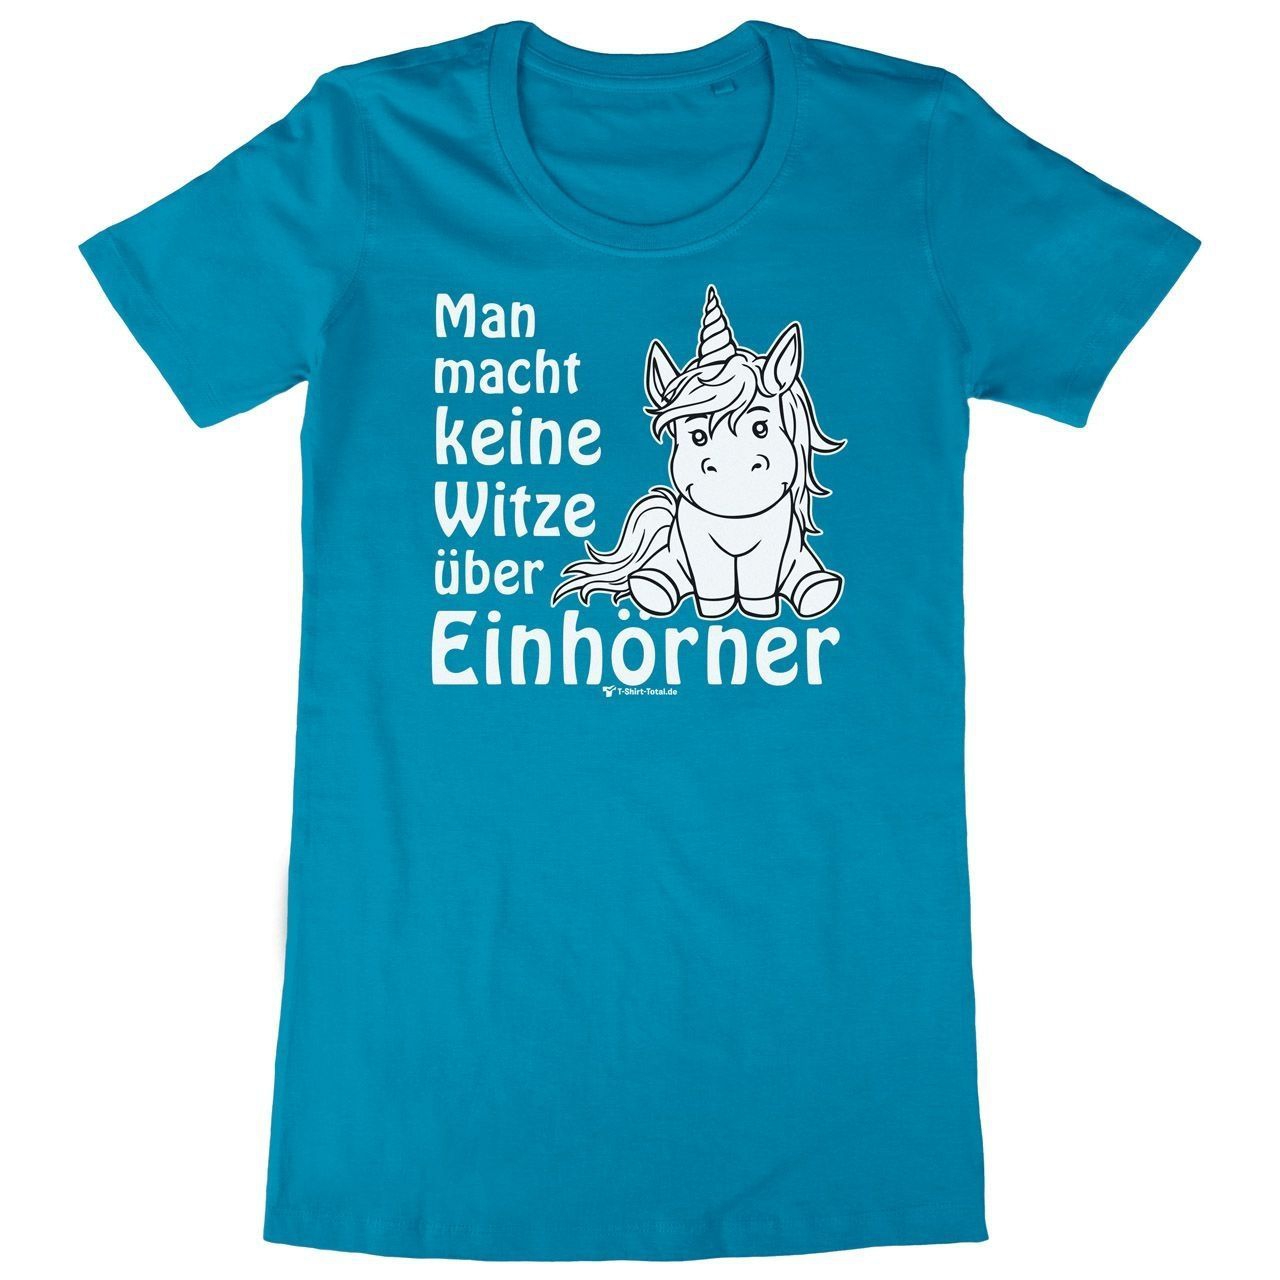 Einhorn Witze Woman Long Shirt türkis Medium